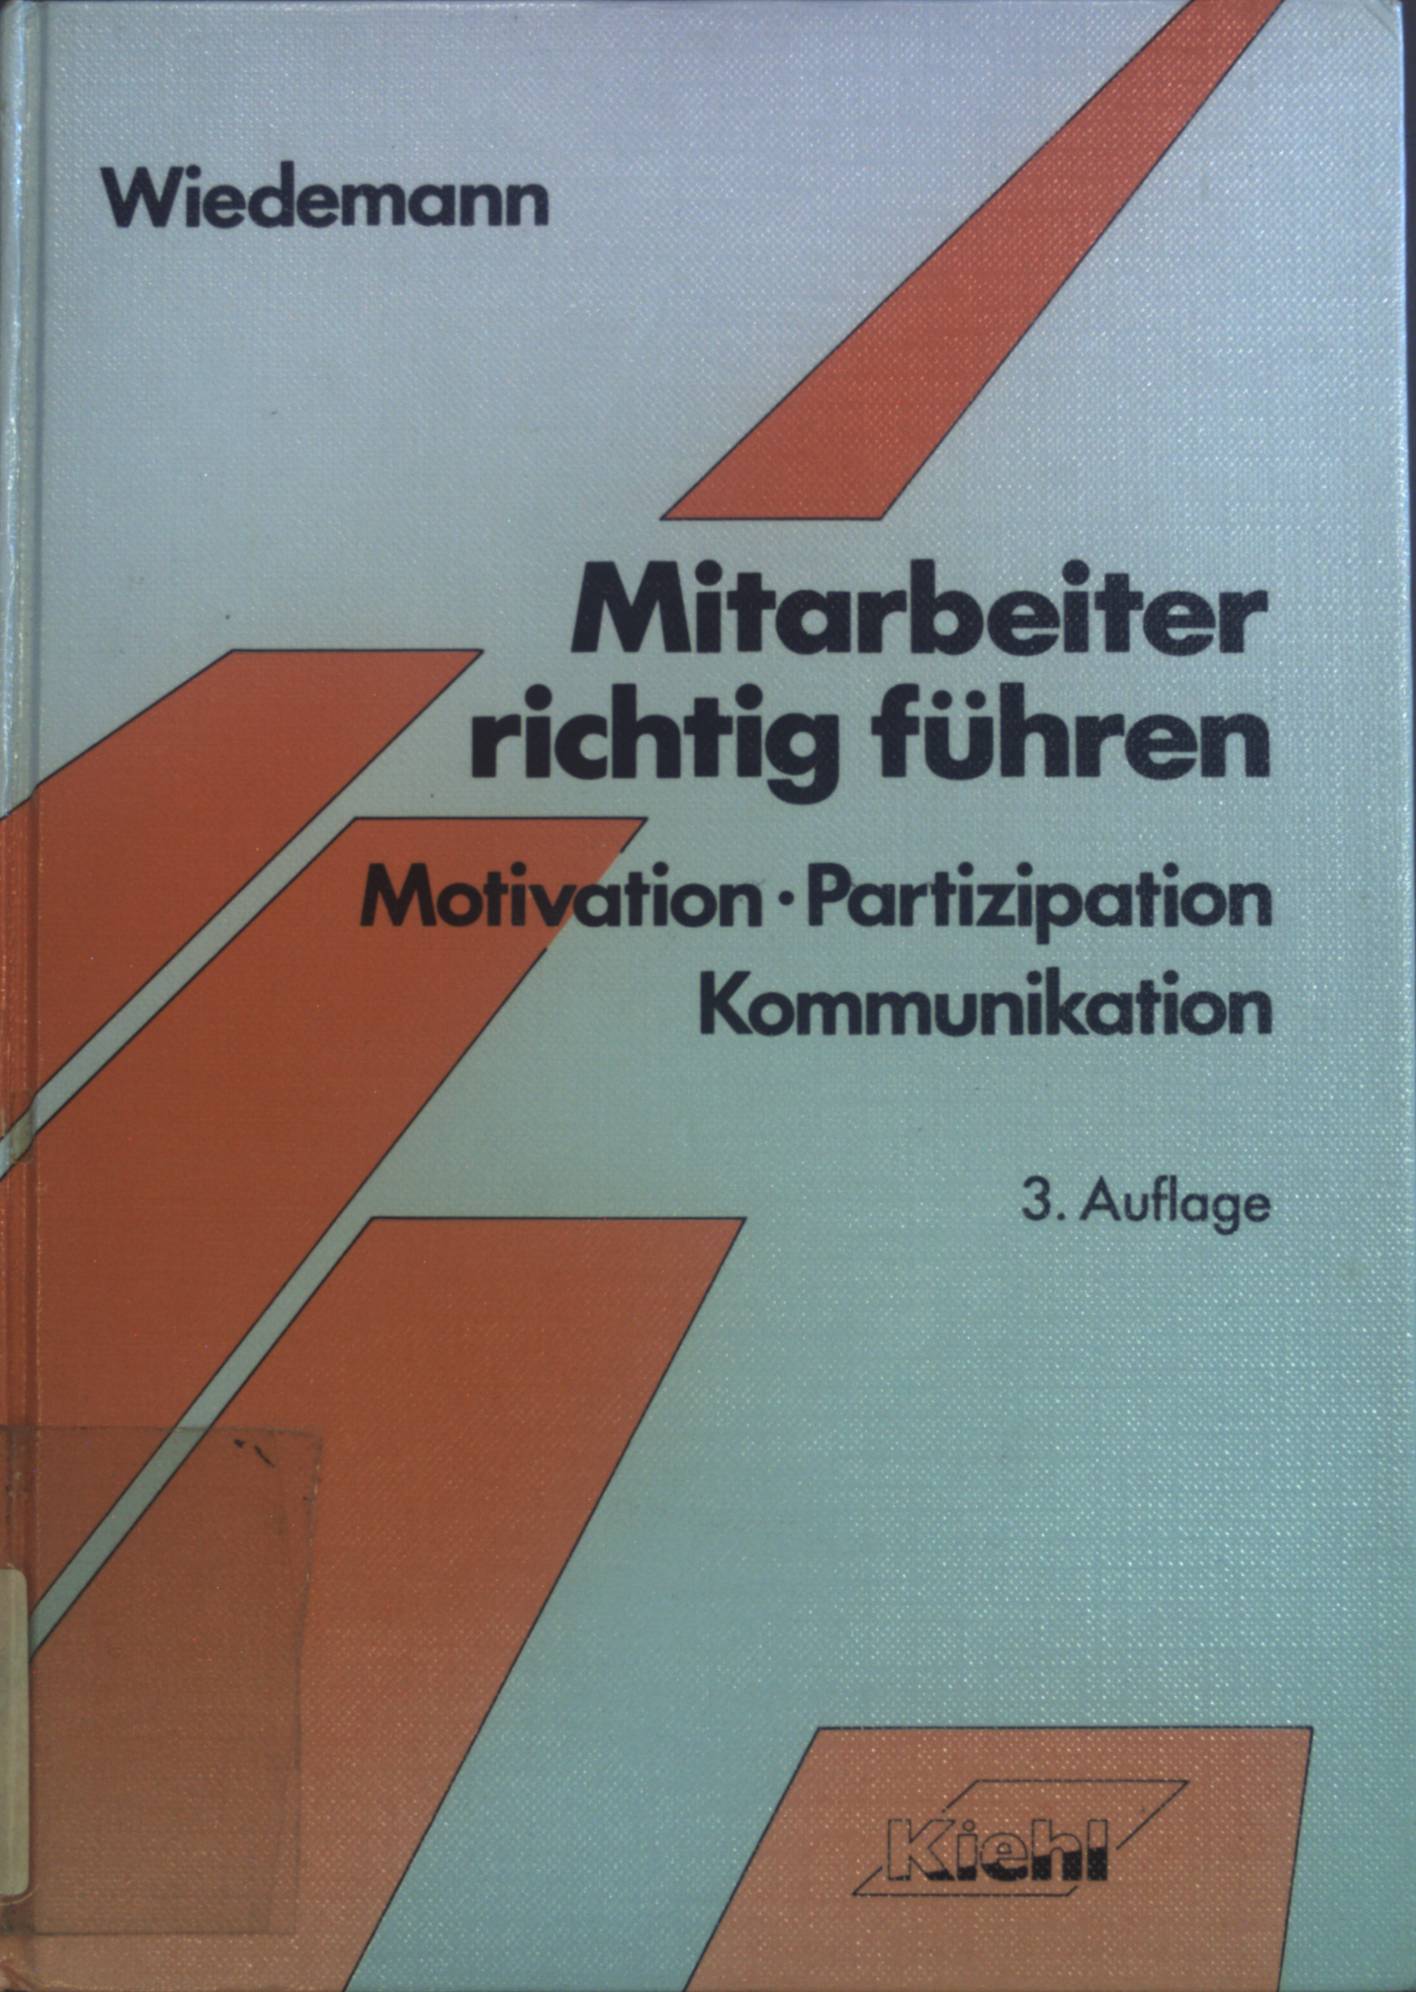 Mitarbeiter richtig führen : Motivation, Partizipation, Kommunikation.  3., unveränd. Aufl. - Wiedemann, Herbert